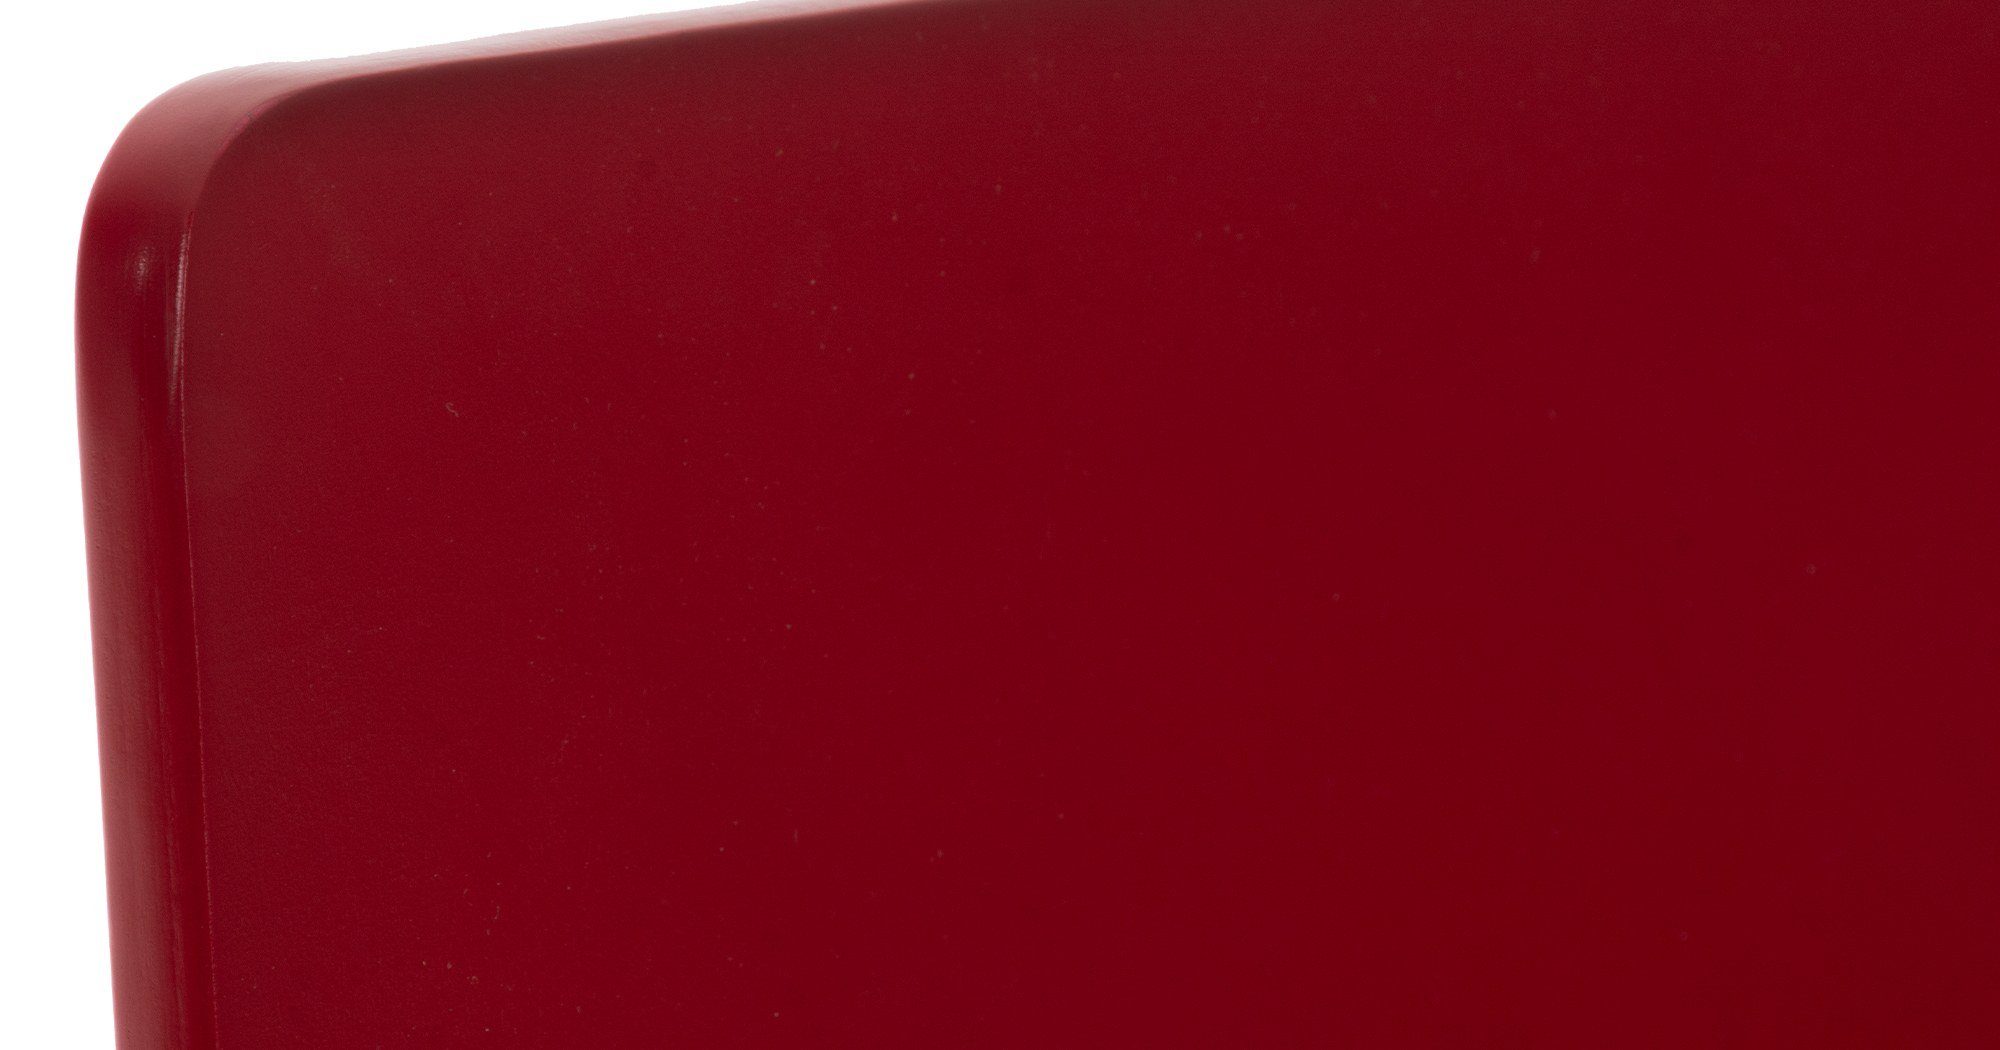 Besucherstuhl ergonomisch & Metallgestell geformter rot CLP Pepe, Holzsitz